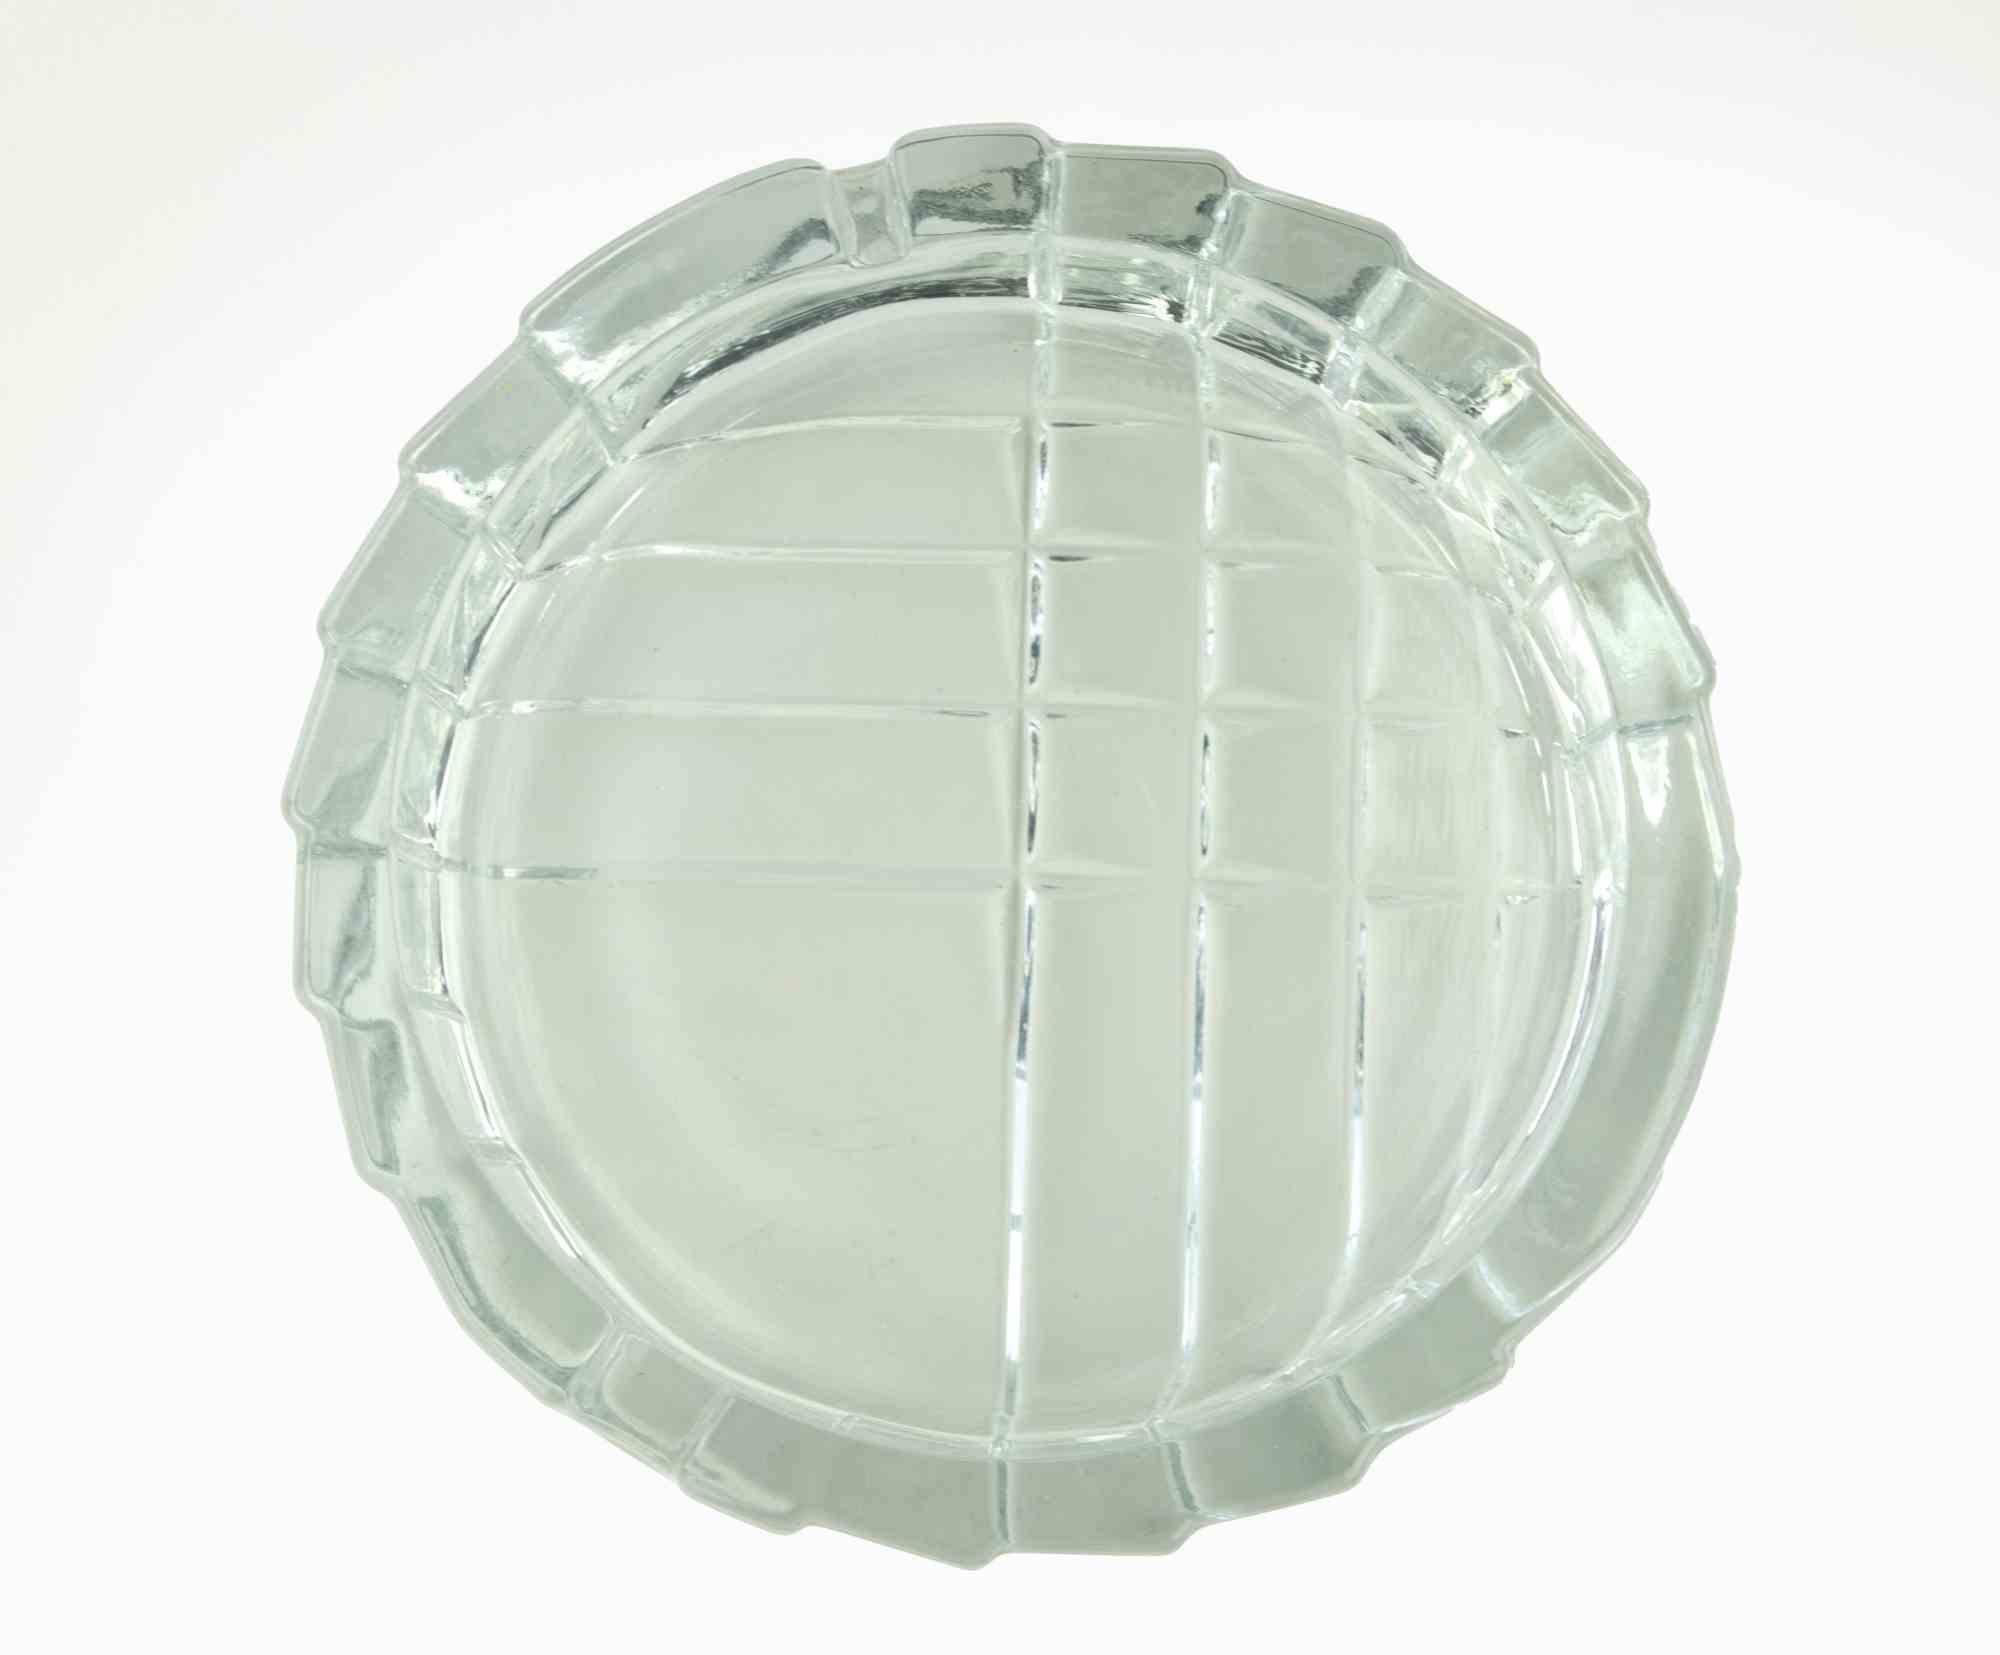 Le cendrier en verre est un objet réalisé dans les années 1970.

Verre d'art, D 15 x 4 cm.

Très bonnes conditions !